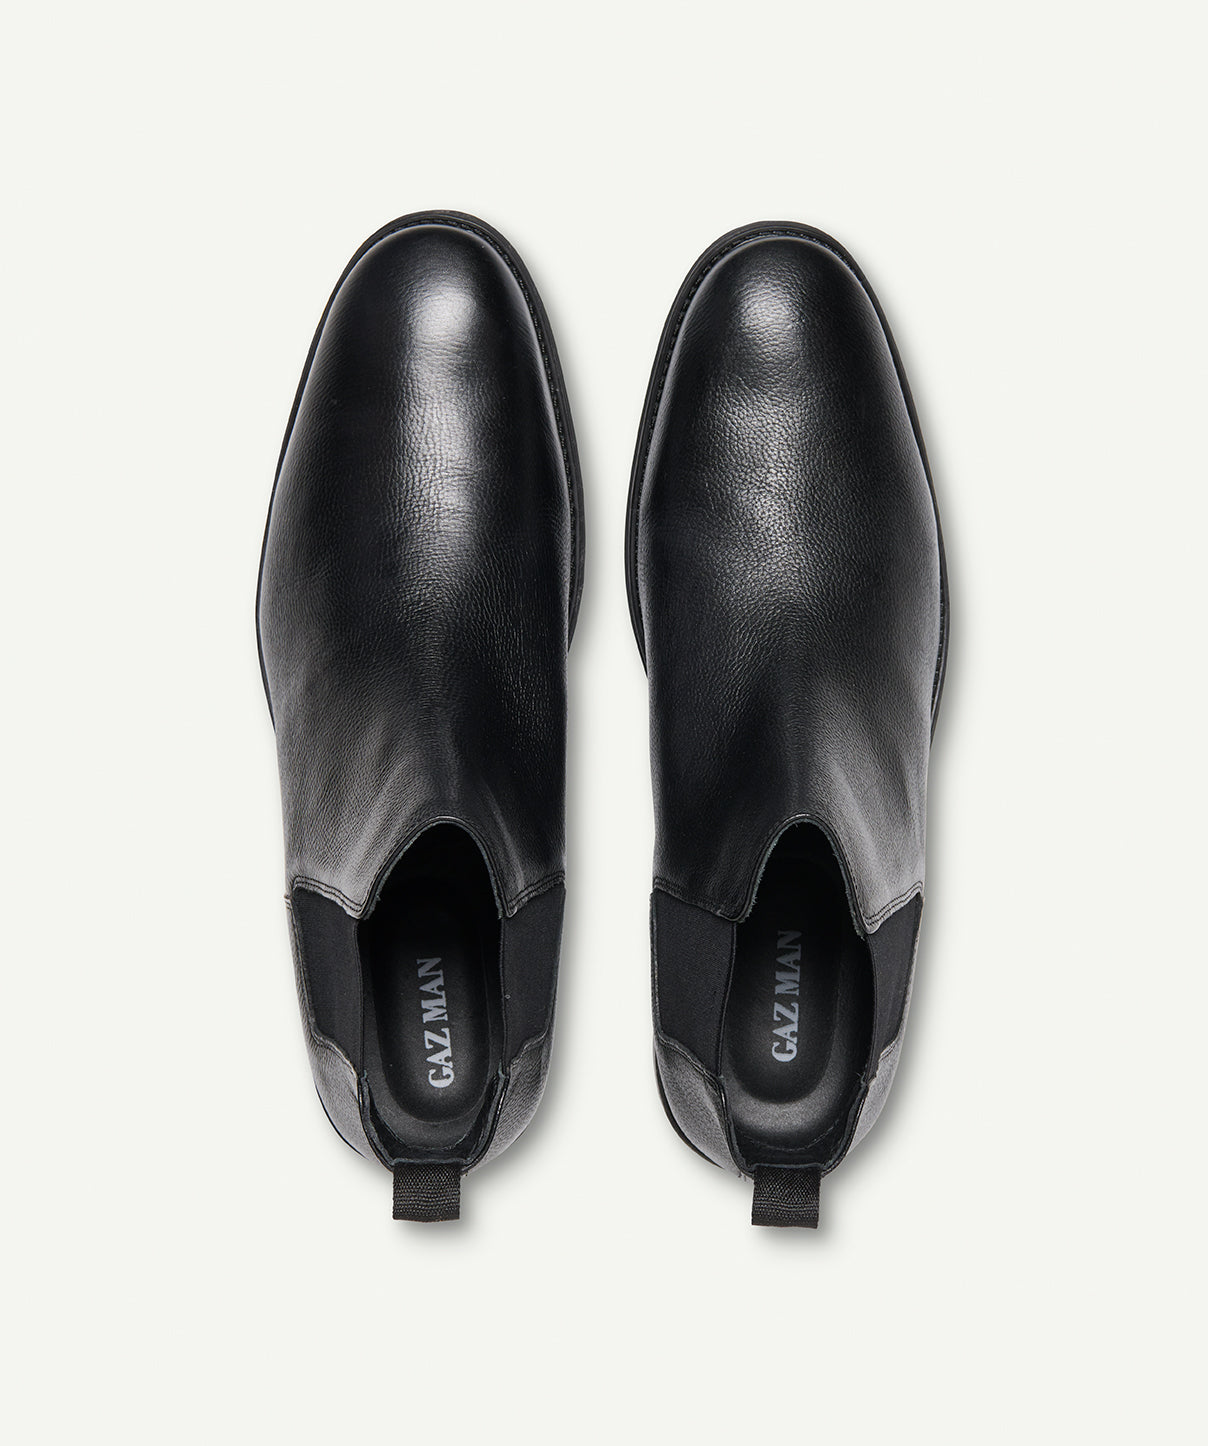 GAZMAN Leather Chelsea Boot - Black - Shoes - GAZMAN